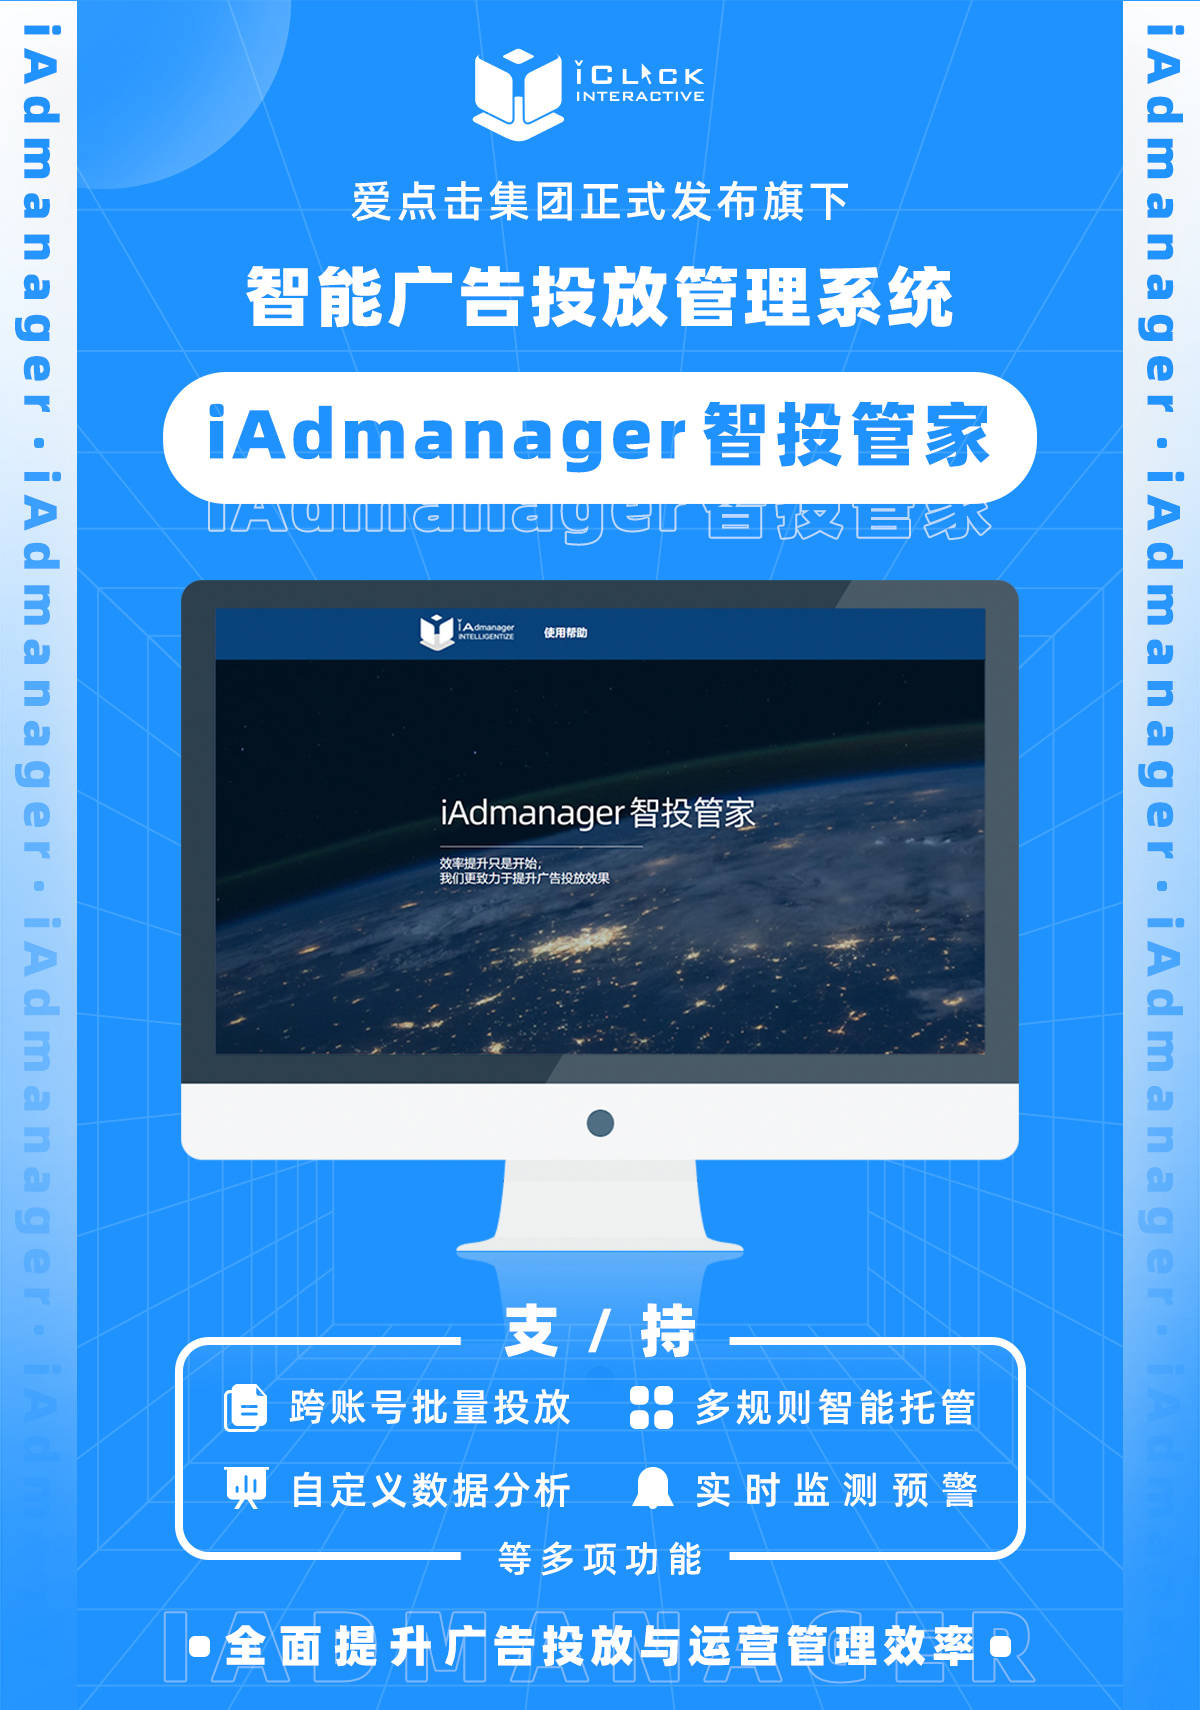 官宣 | 爱点击旗下智能广告投放管理系统iAdmanager正式发布